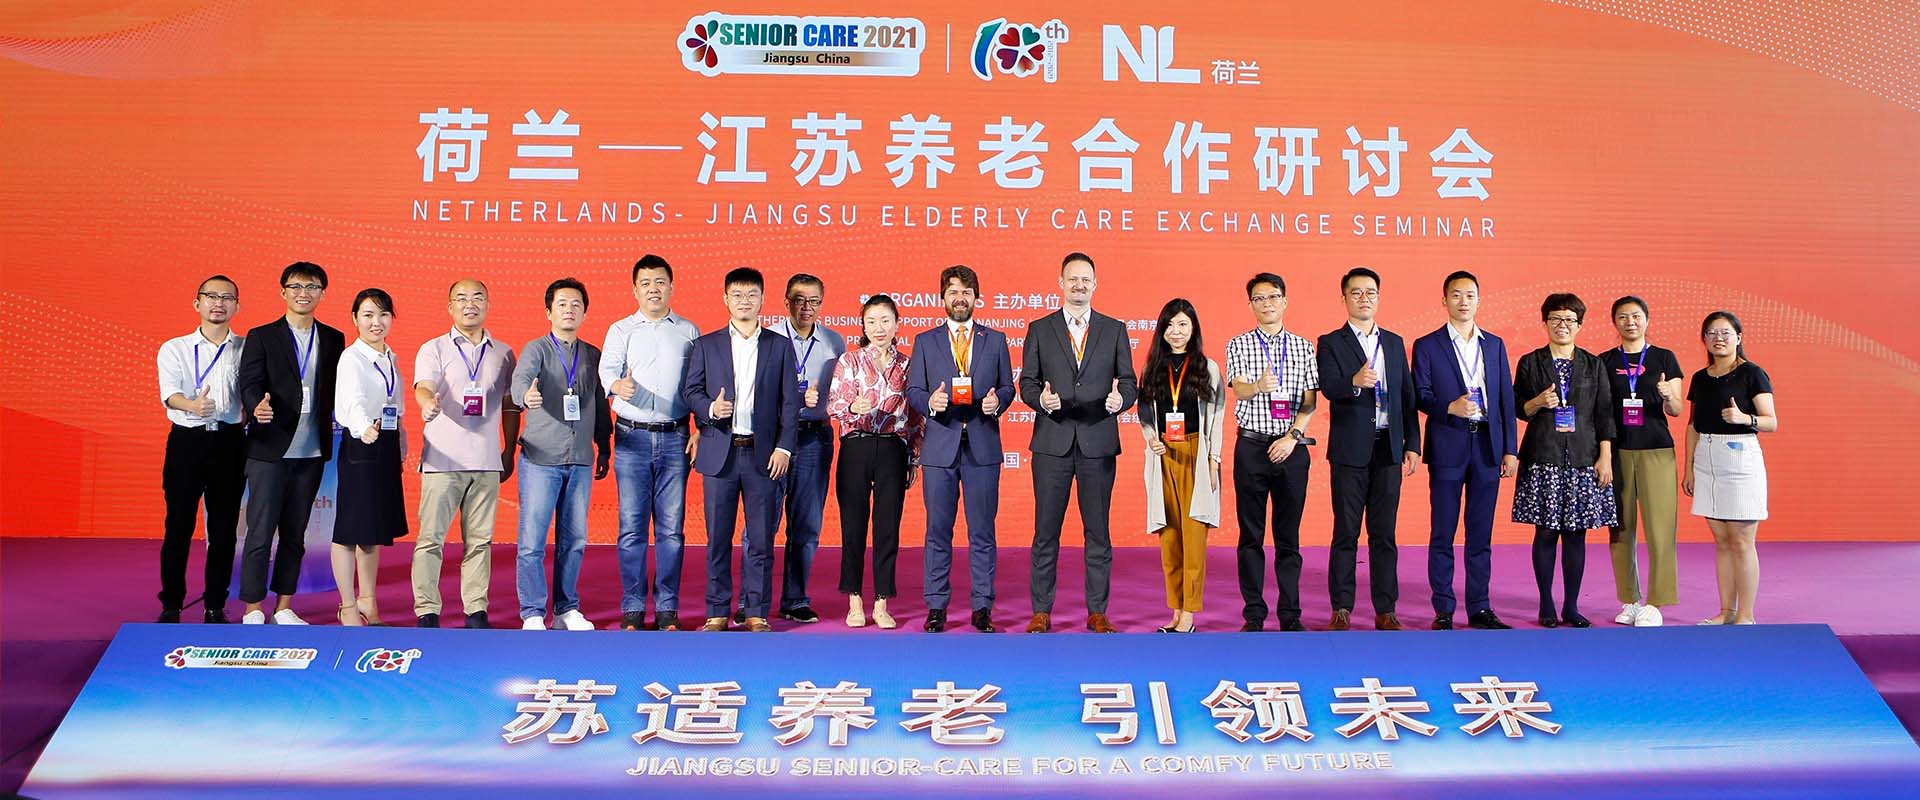 ISC presentatie op de Jiangsu Senior Care Service Expo 2021